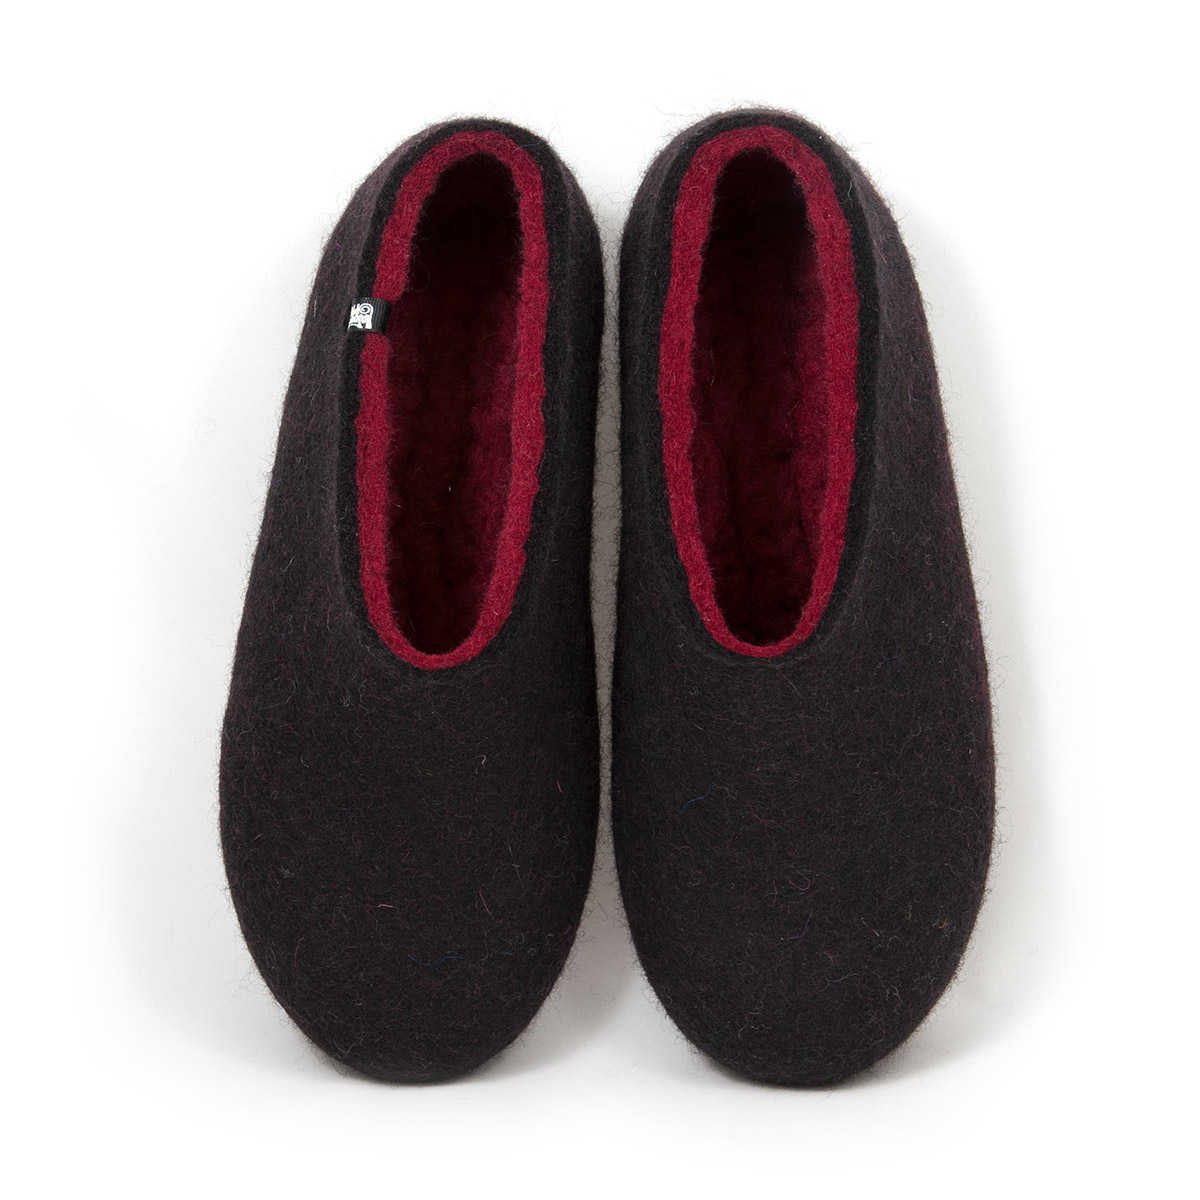 Black wool slippers DUAL BLACK dark red